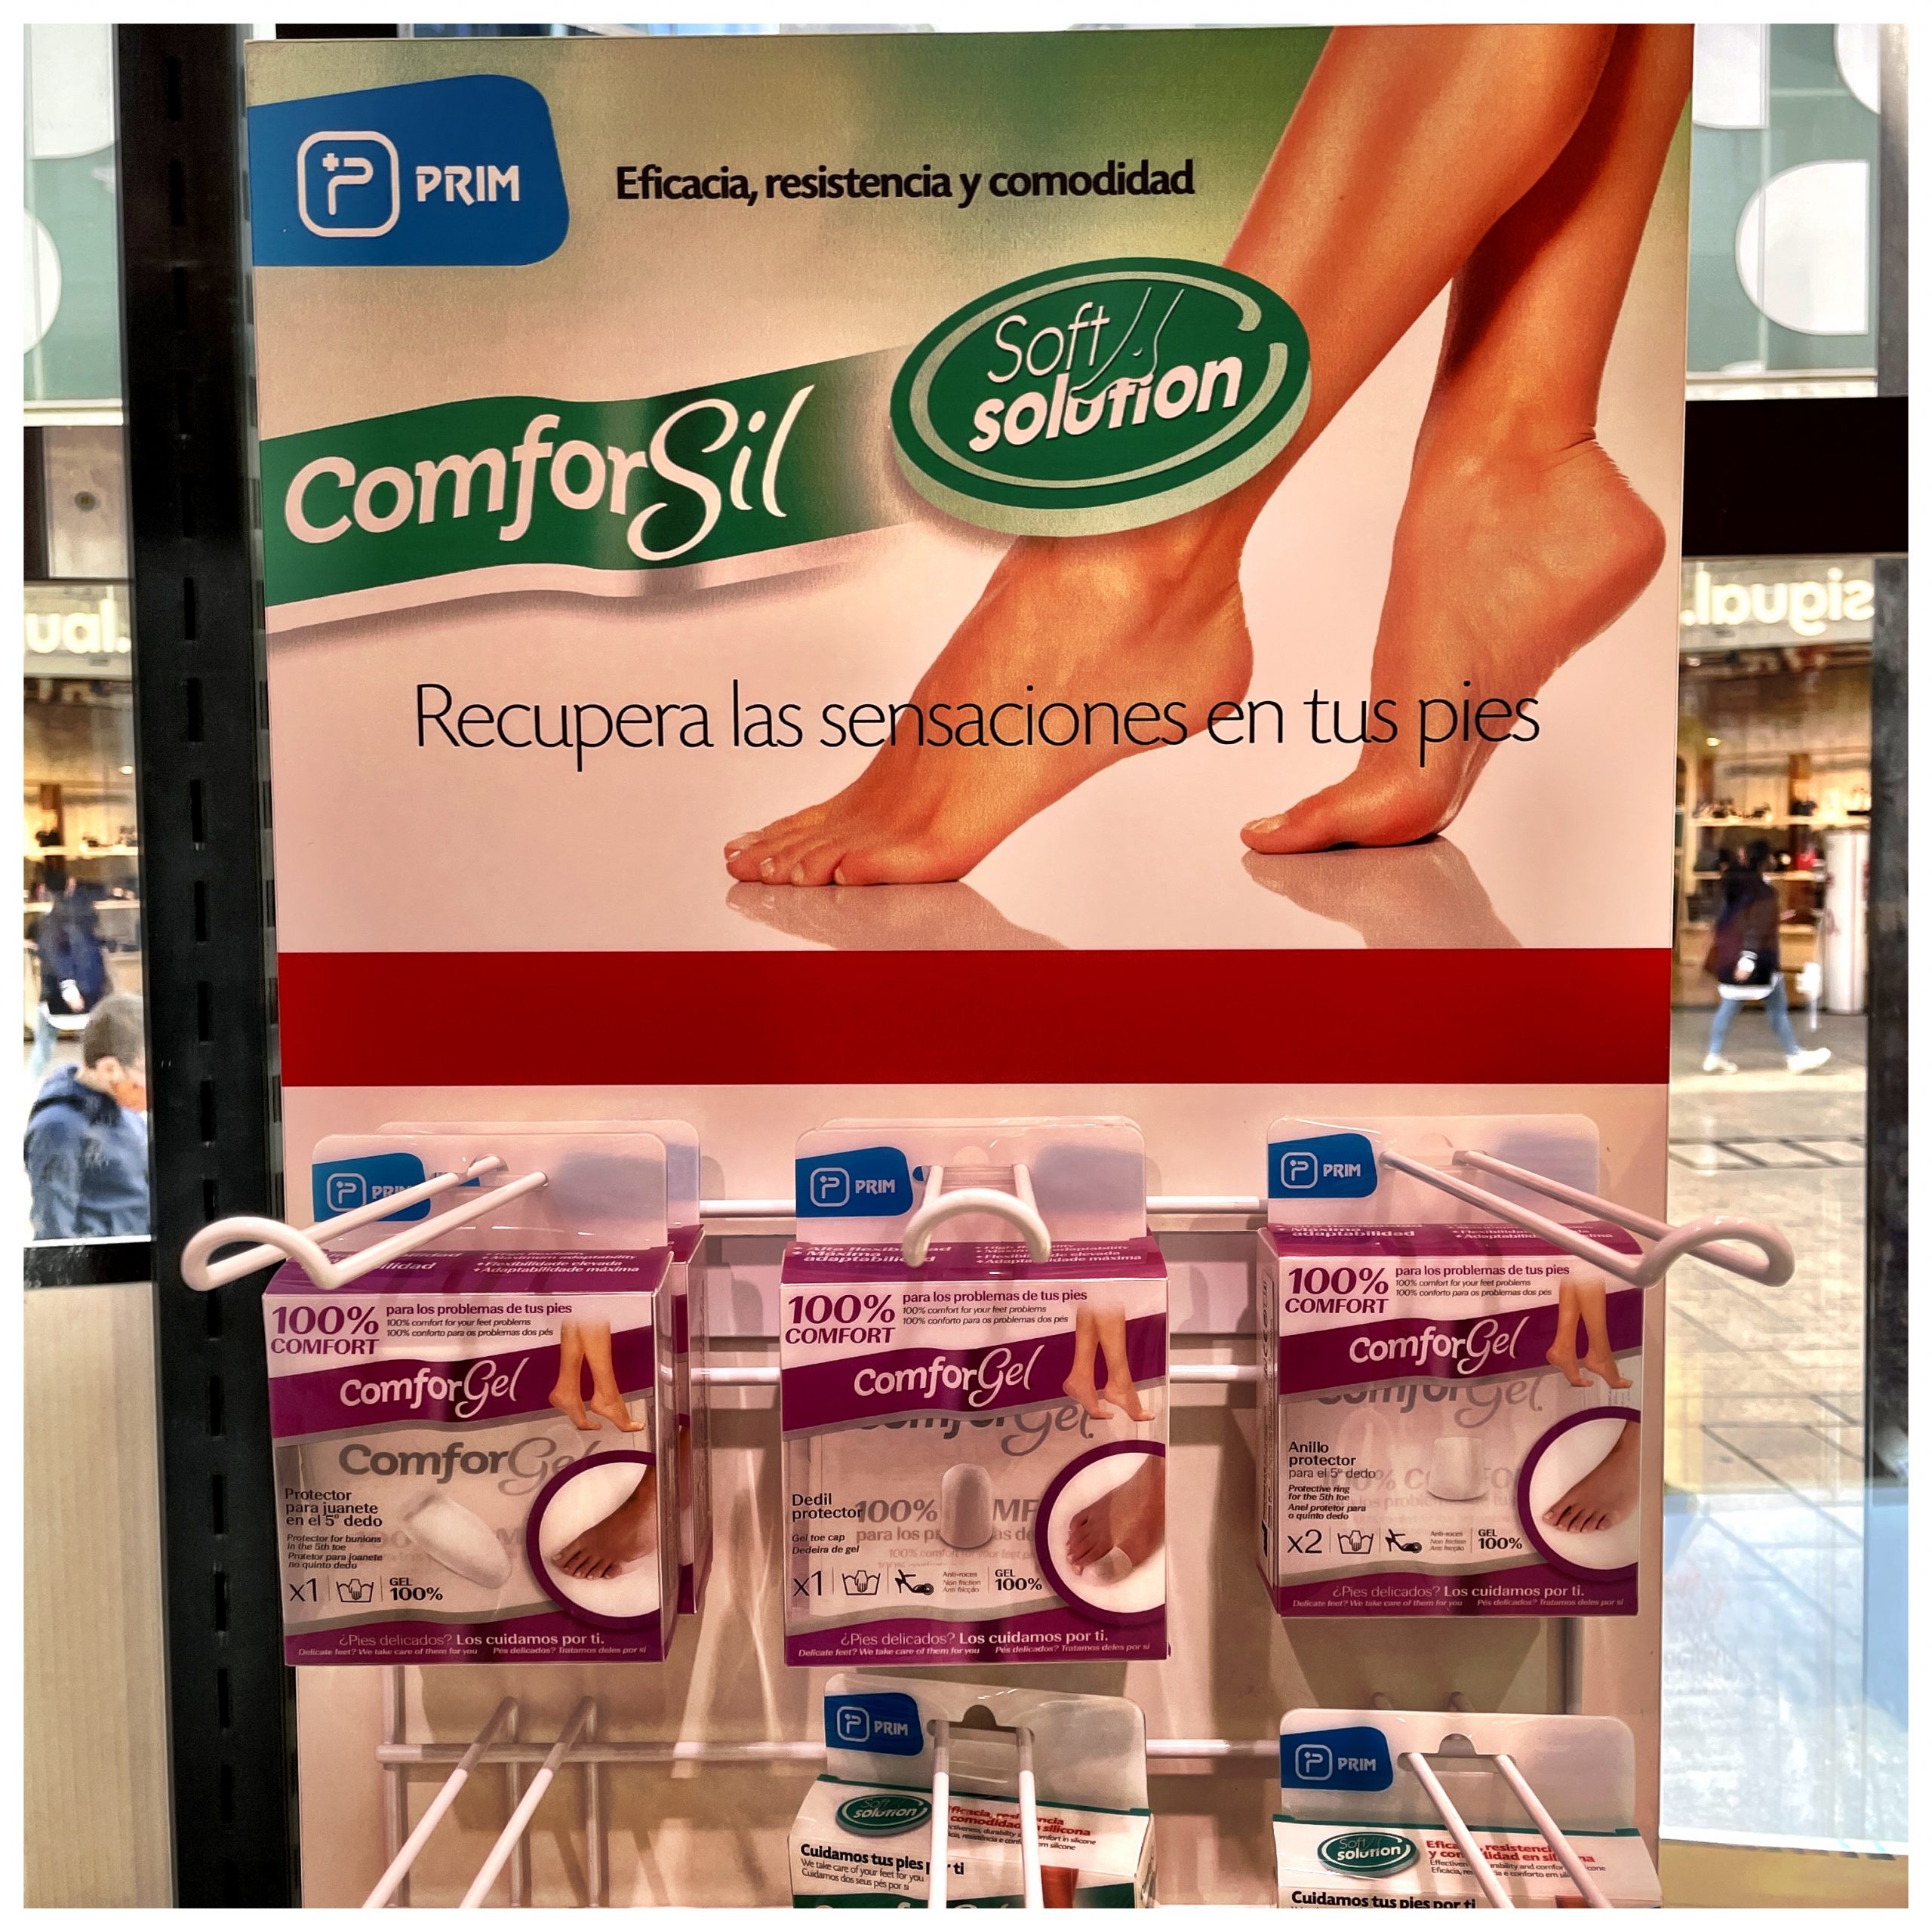 Comforsil - Soluciones a la medida de sus pies - Prim SA Hipoalergénicos. COMFORSIL Silicone son productos hipoalergénicos, no irritan la piel, son inocuos, sin crecimiento bacteriano, ni tóxicos. No desprenden aceite.